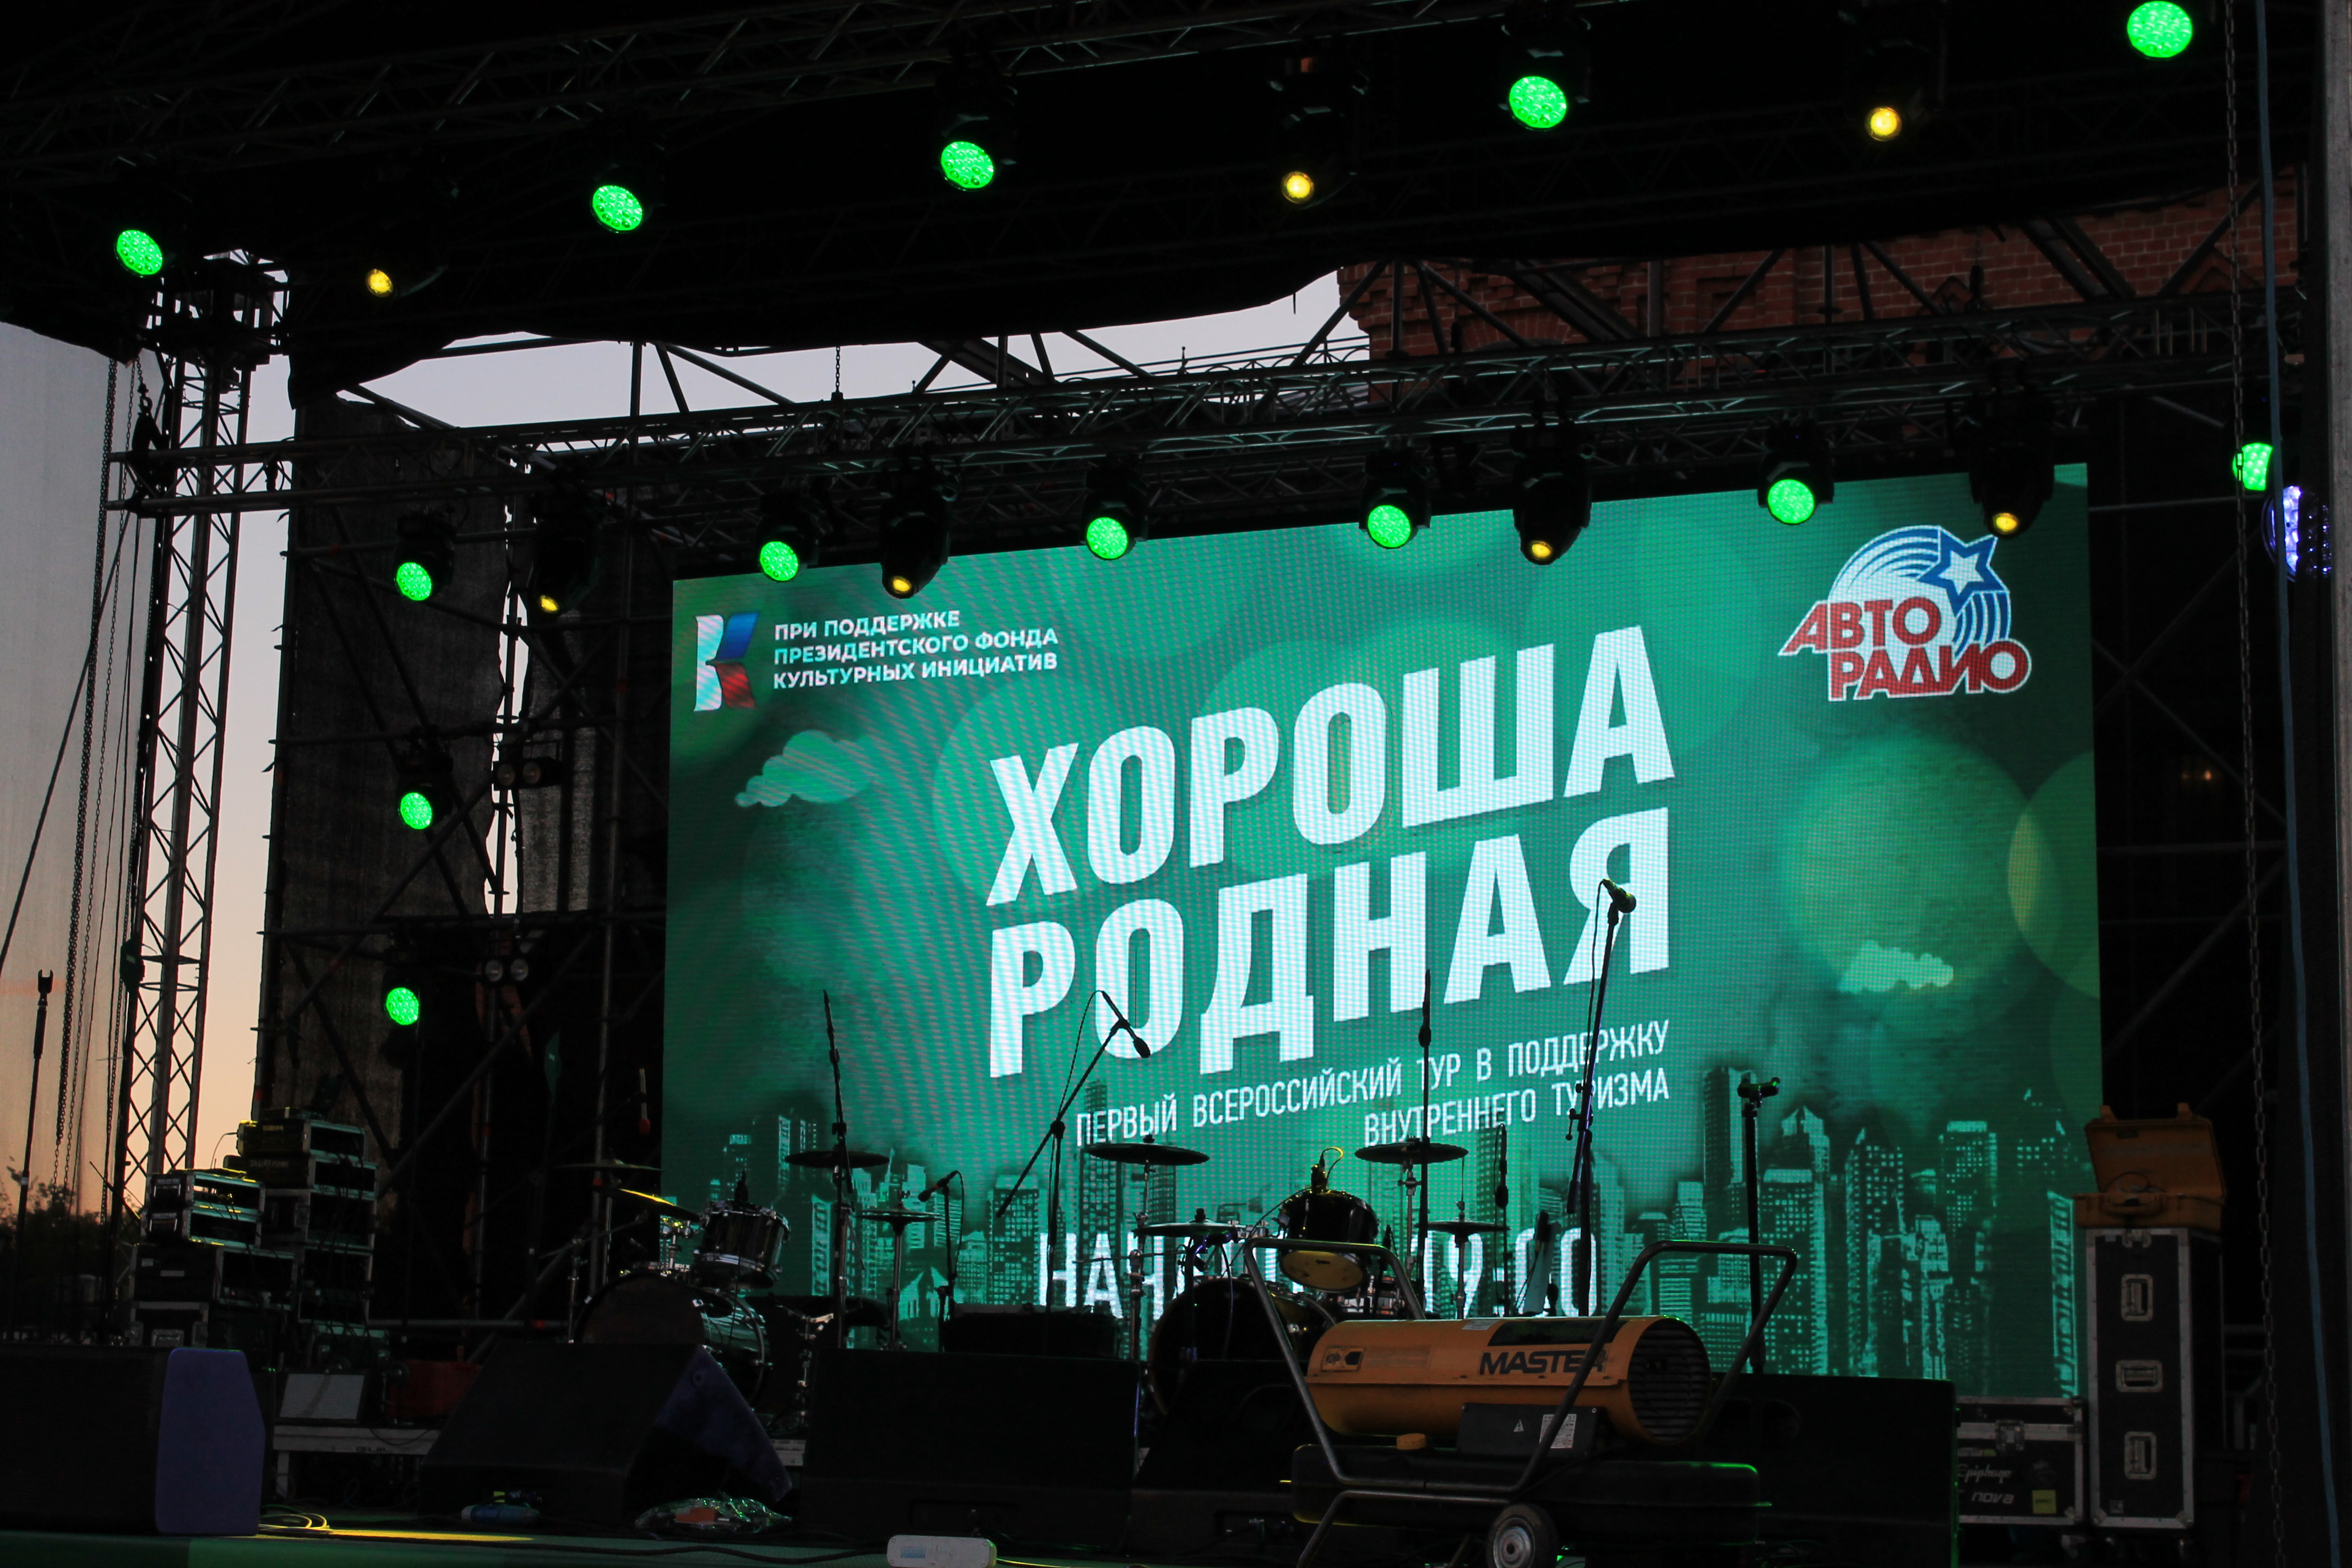 Первый всероссийский звёздный тур "Хороша родная" во Владимире: как это было 